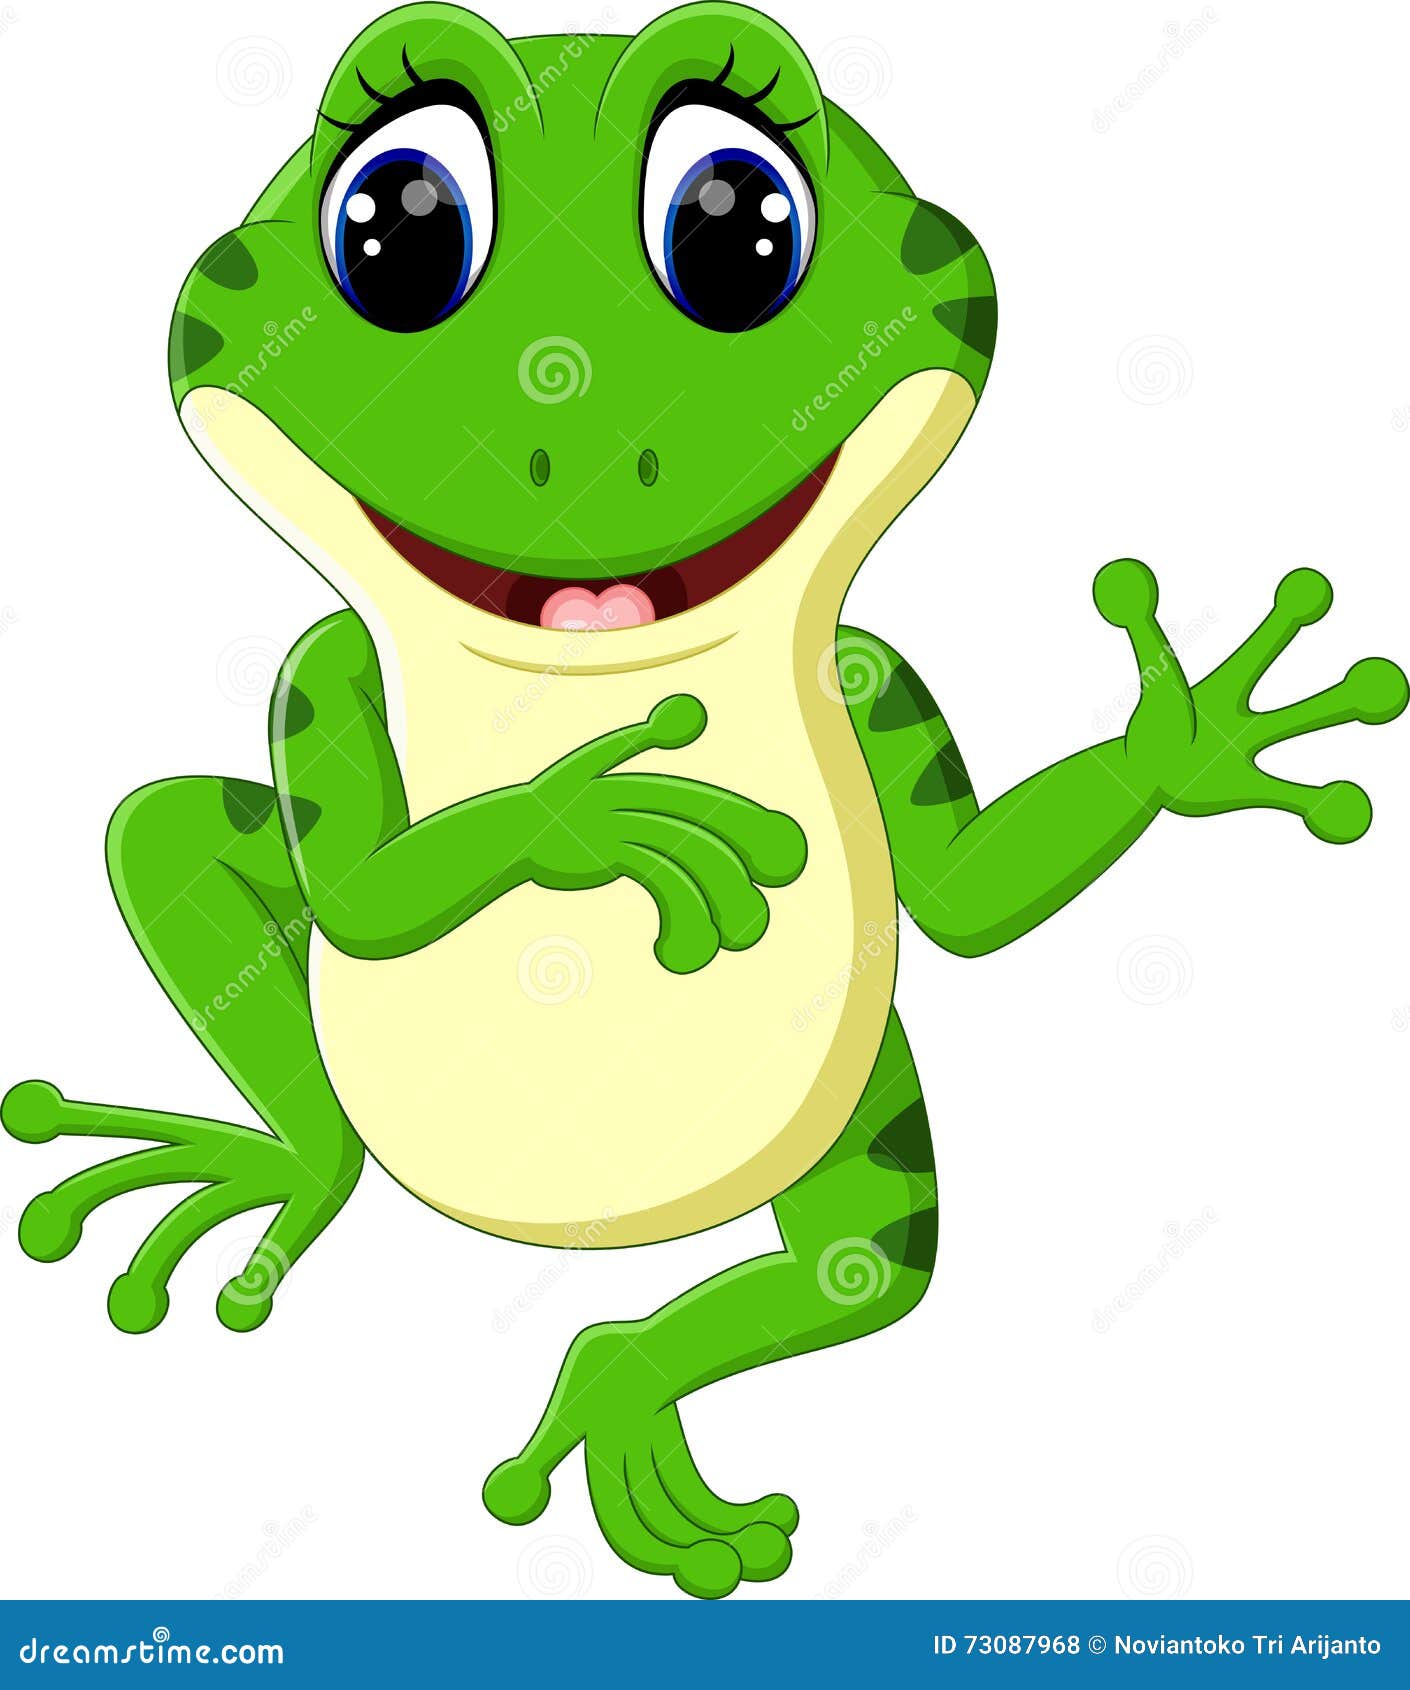 Cute frog cartoon stock vector. Illustration of green - 73087968